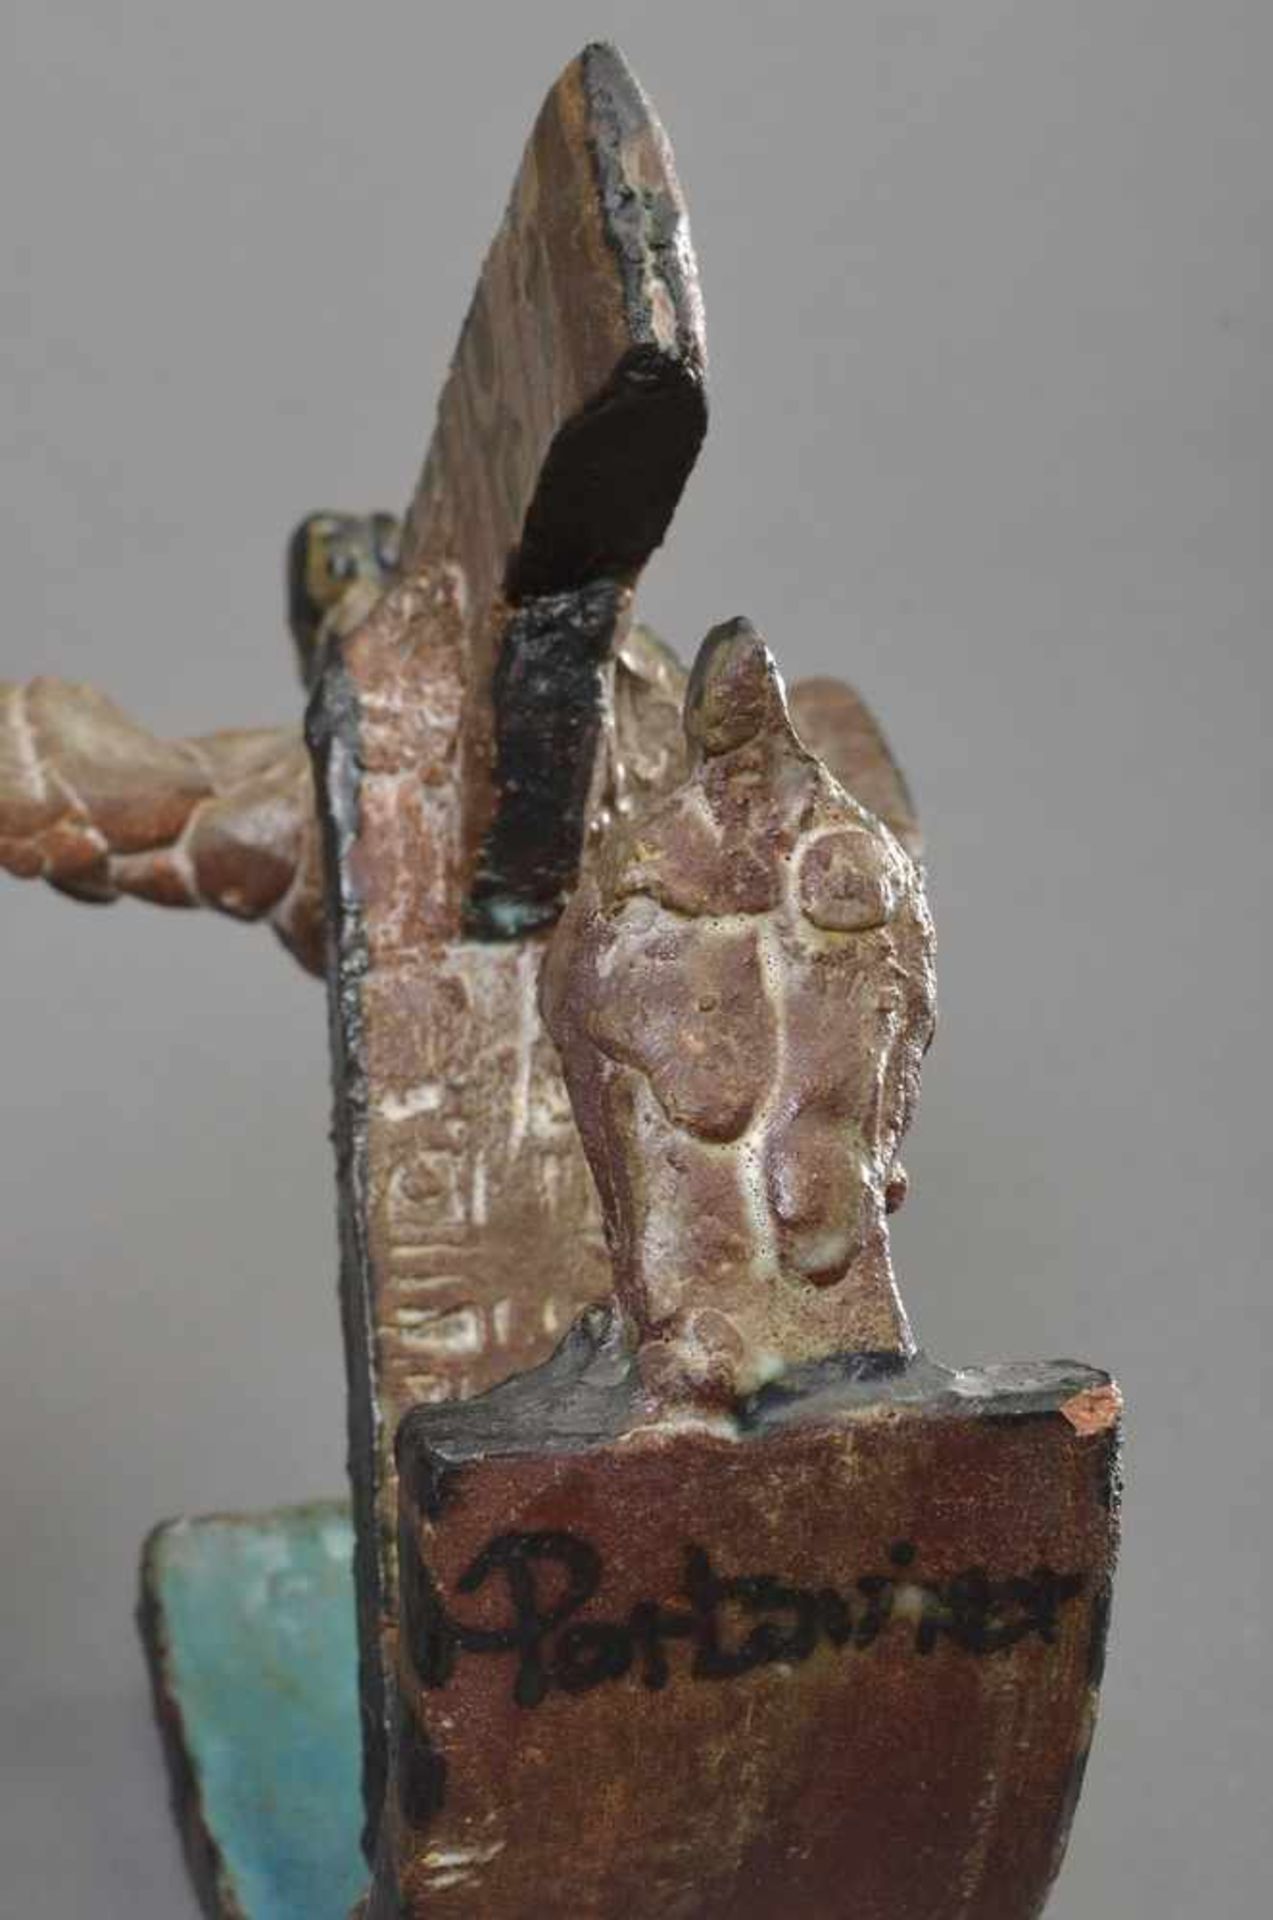 Portanier, Gilbert (*1926) "Vogel-Schiff", farbig glasierte Keramik Skulptur, H. 21cm, rest. - Bild 3 aus 4